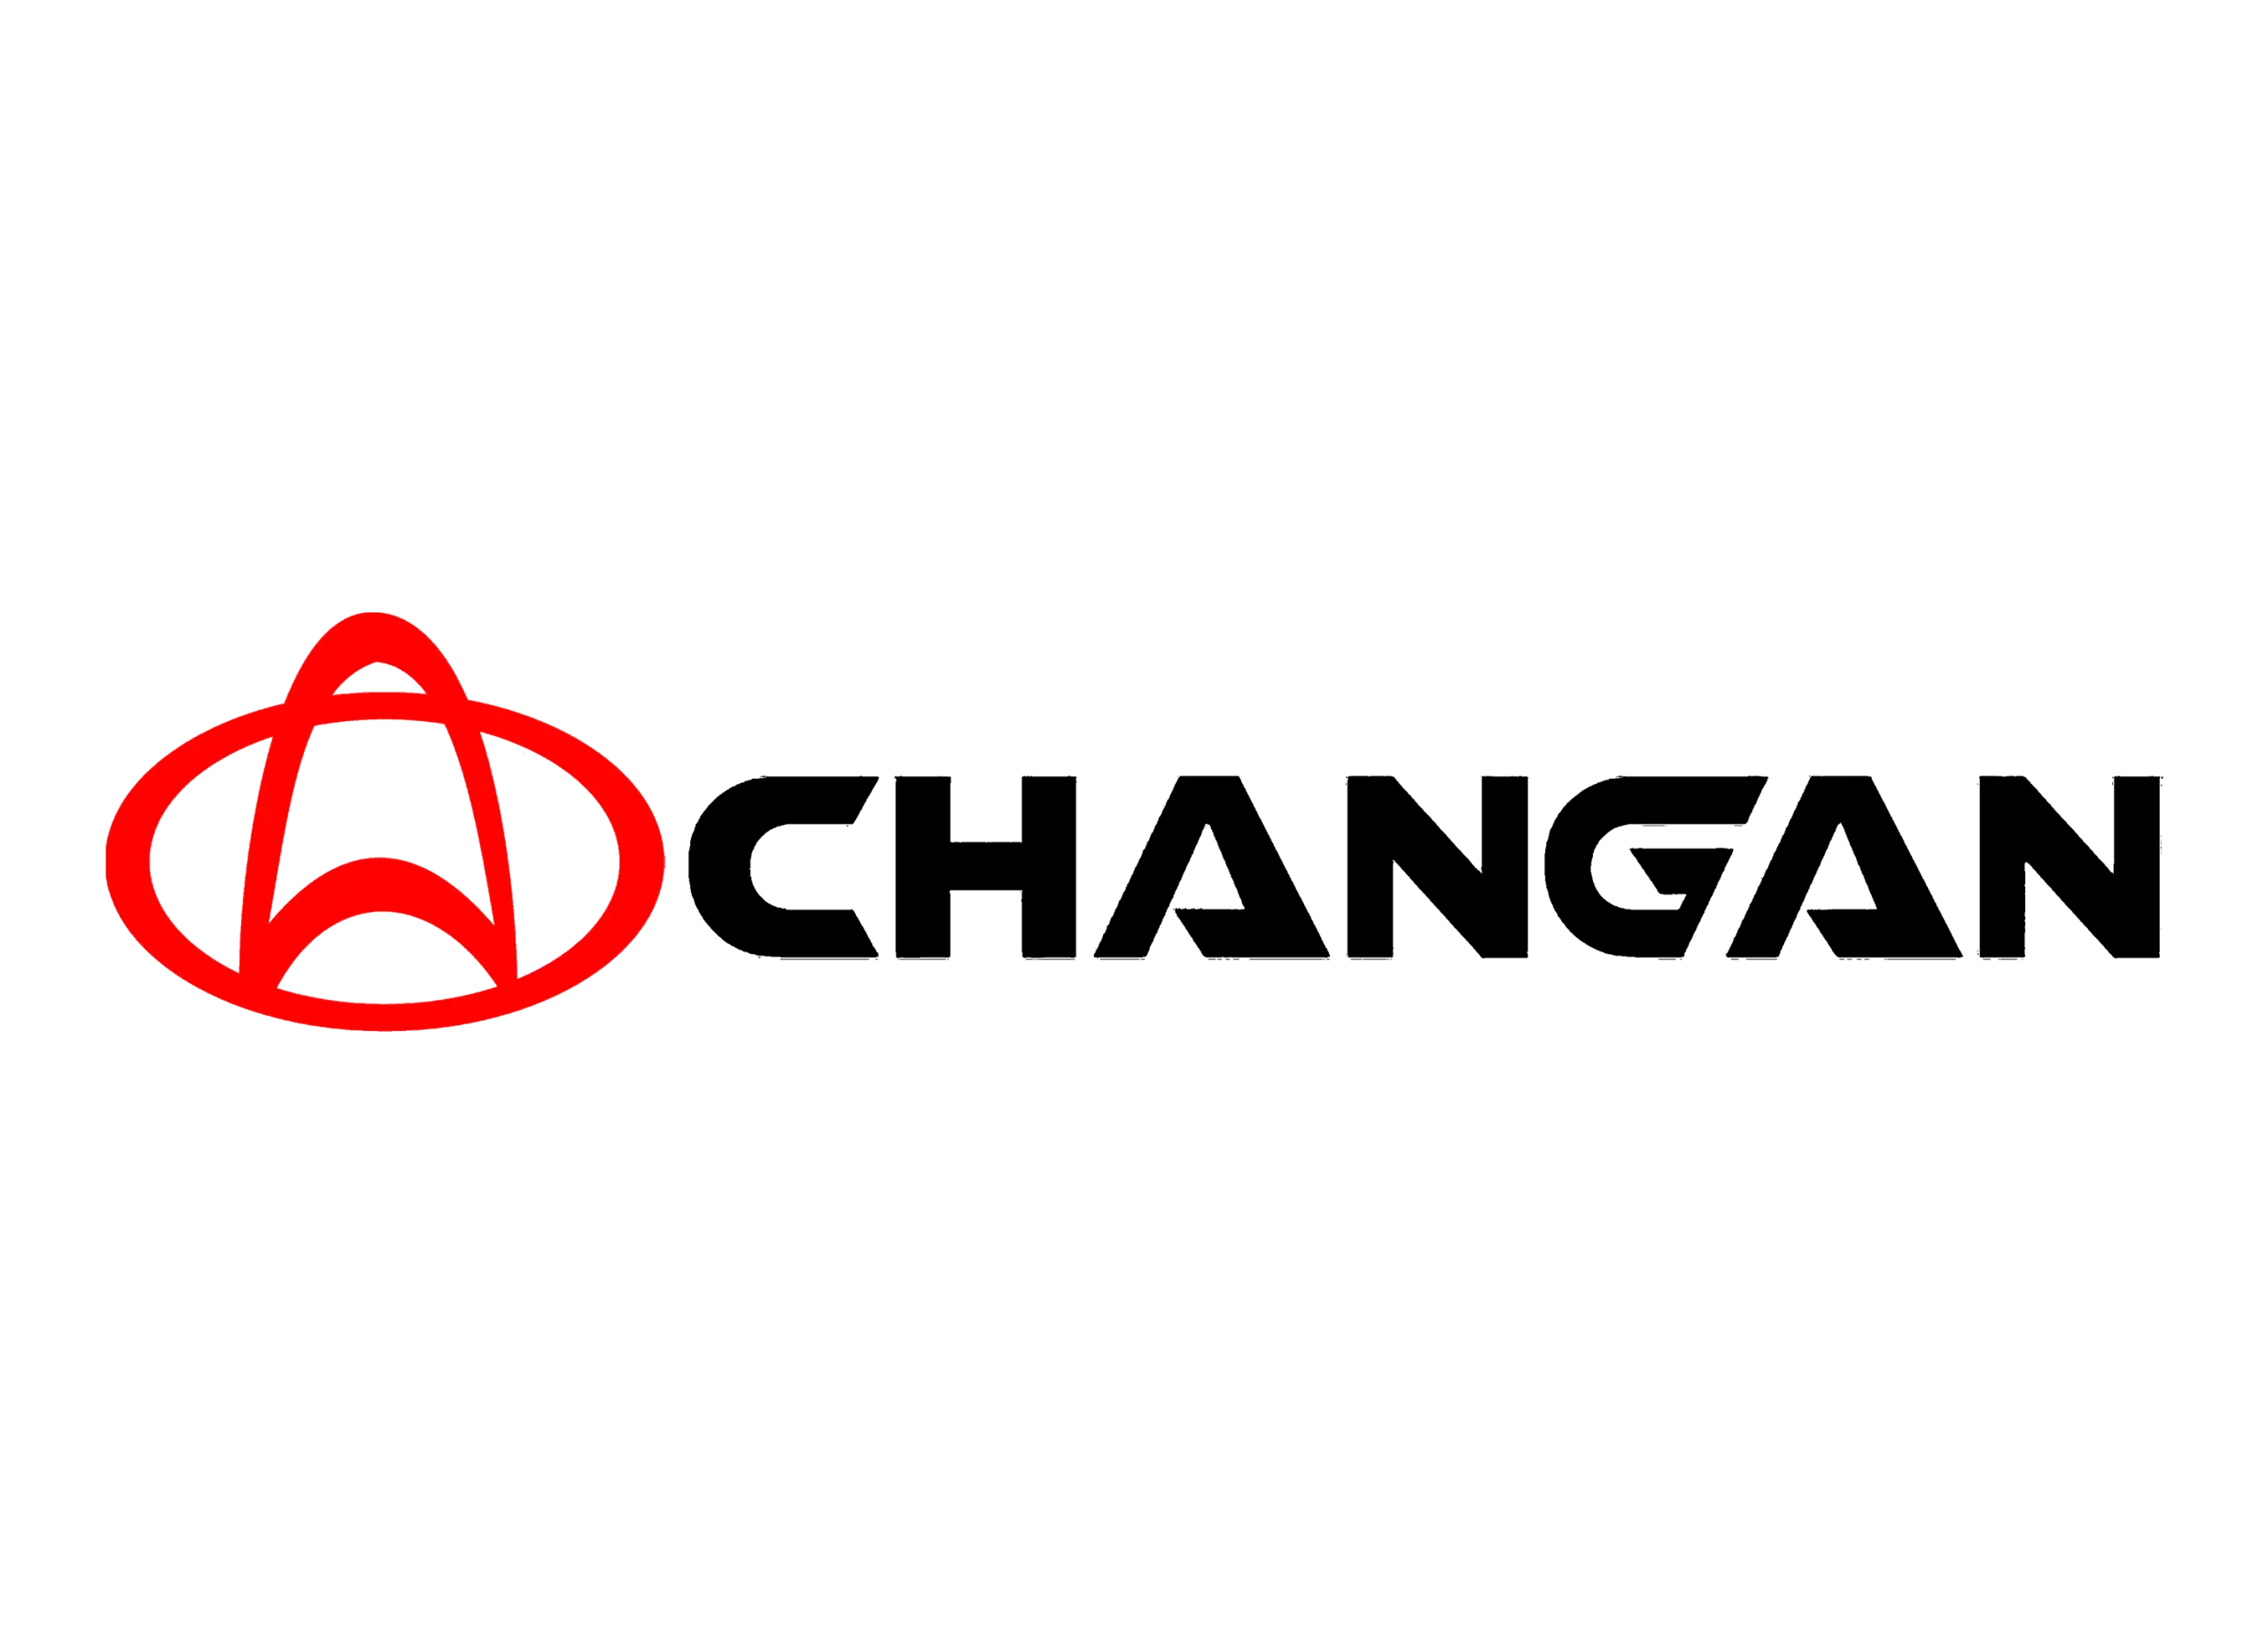 Changan logo 1957-1998